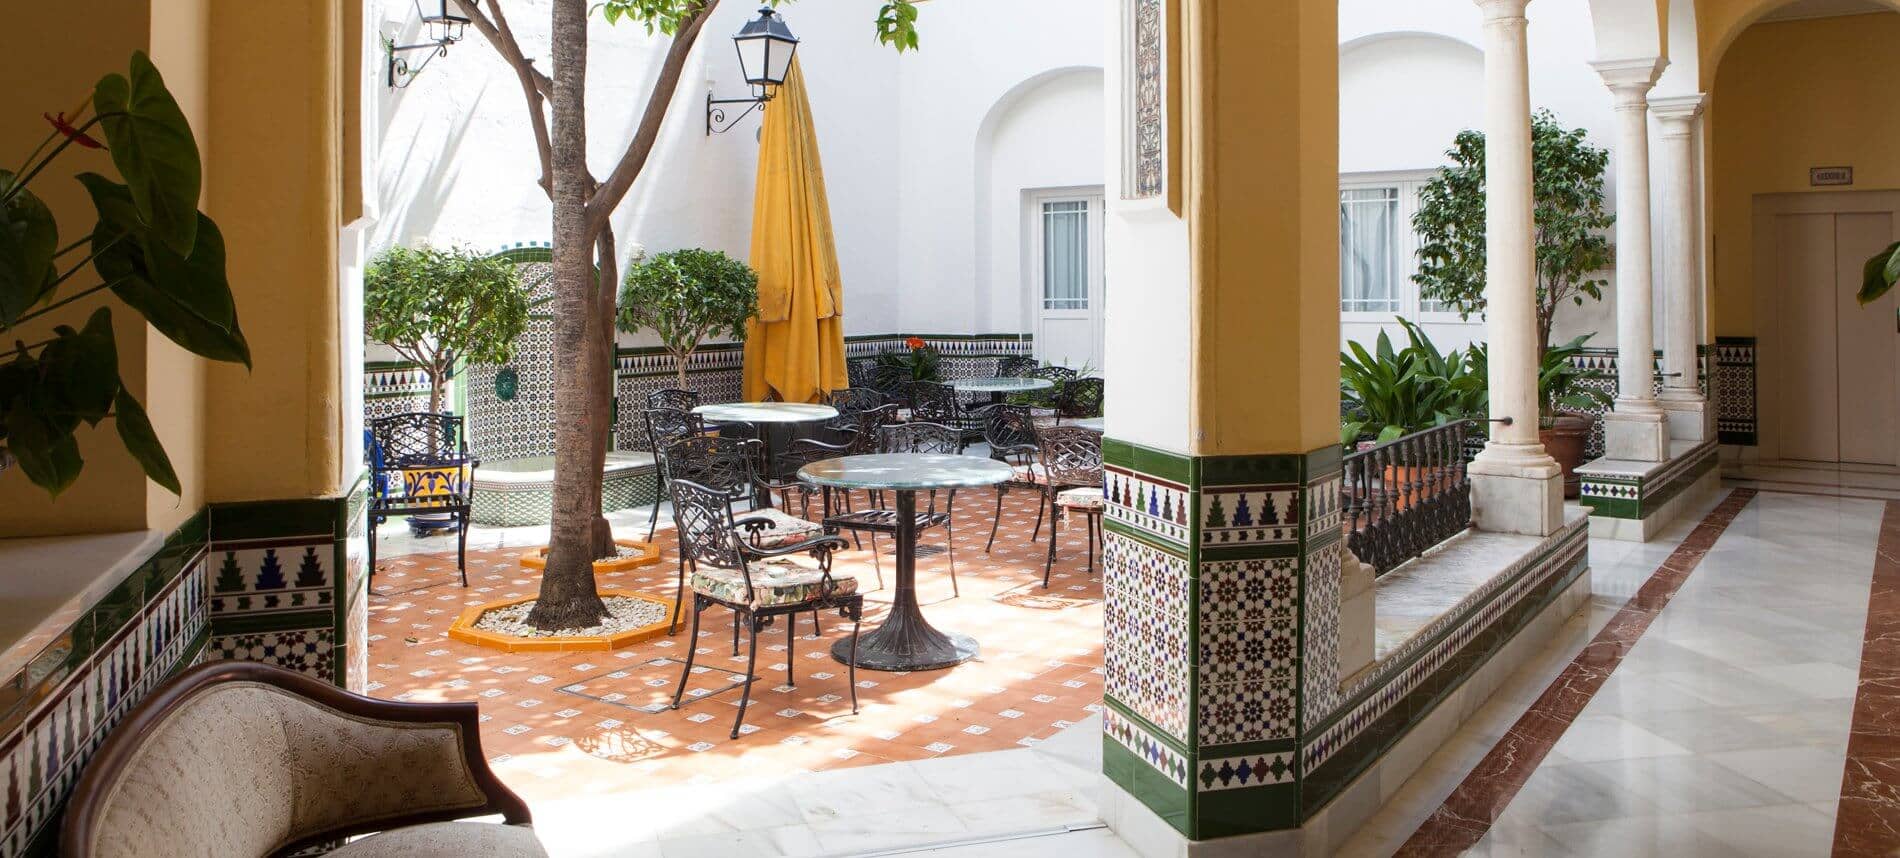 Dicas de hotéis em Sevilha